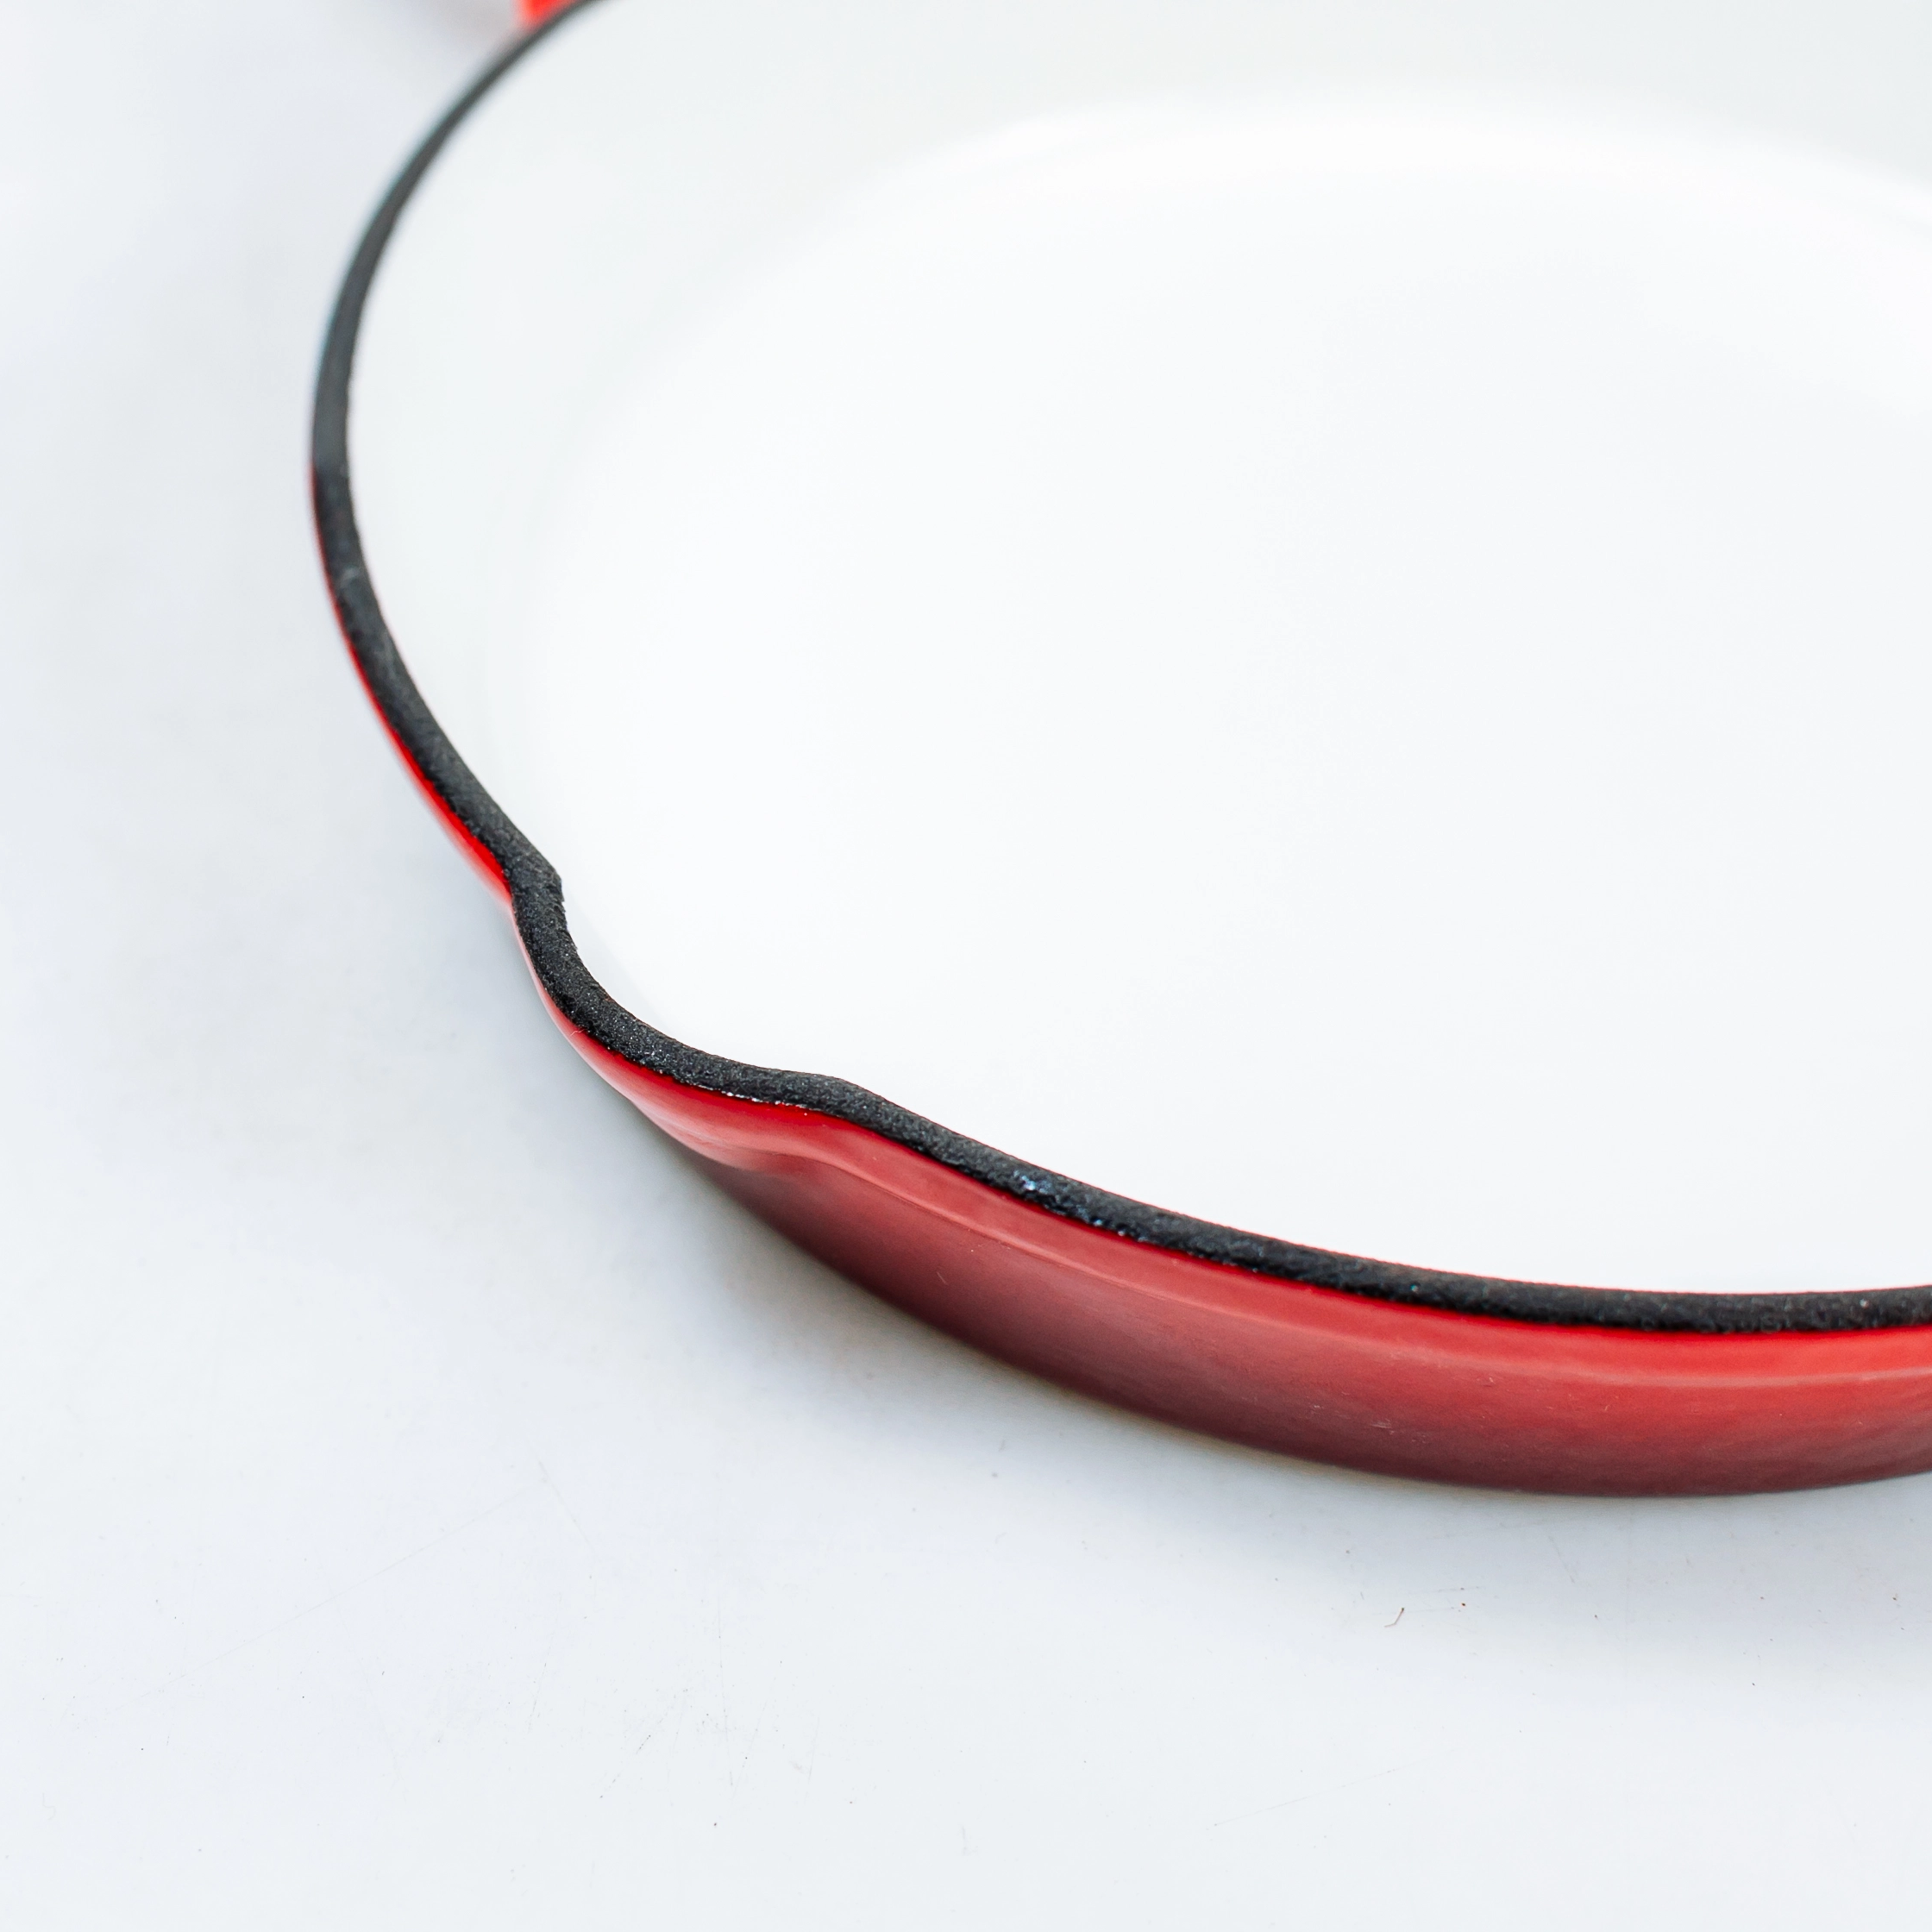 Красная эмалированная стеклянная верхняя 6-дюймовая чугунная сковорода для гриля